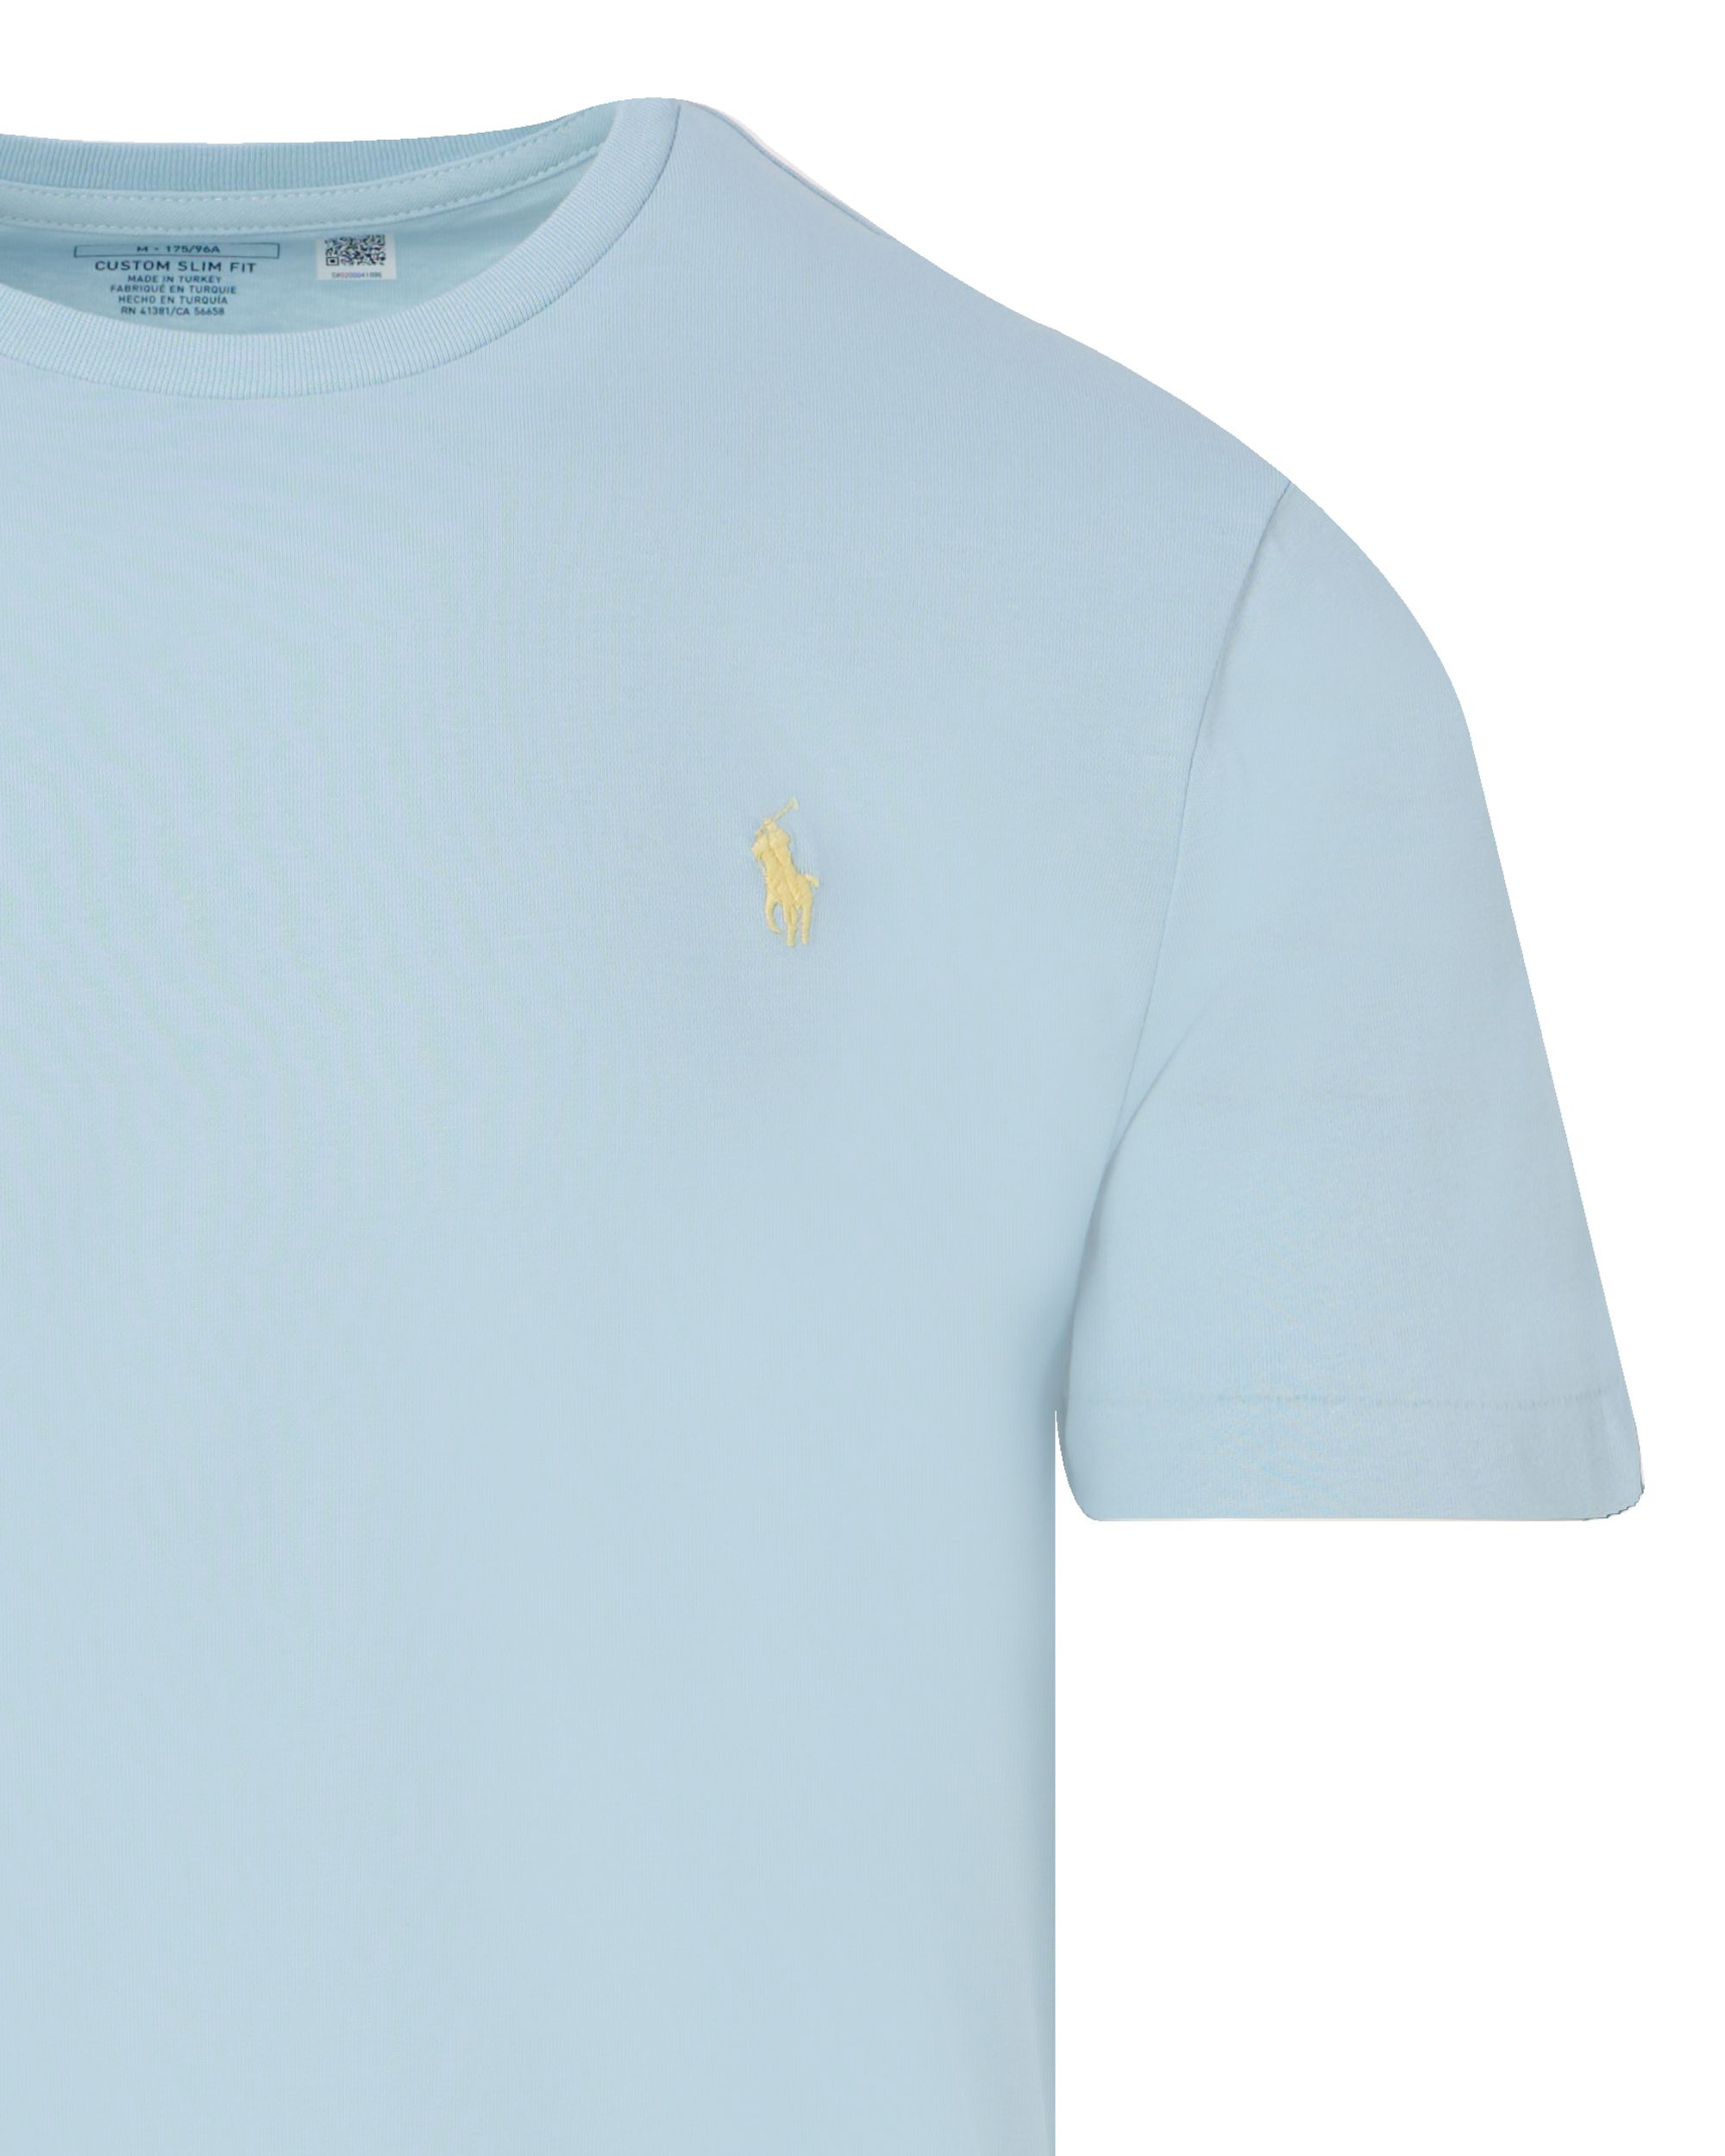 Polo Ralph Lauren T-shirt KM Blauw 095286-001-L